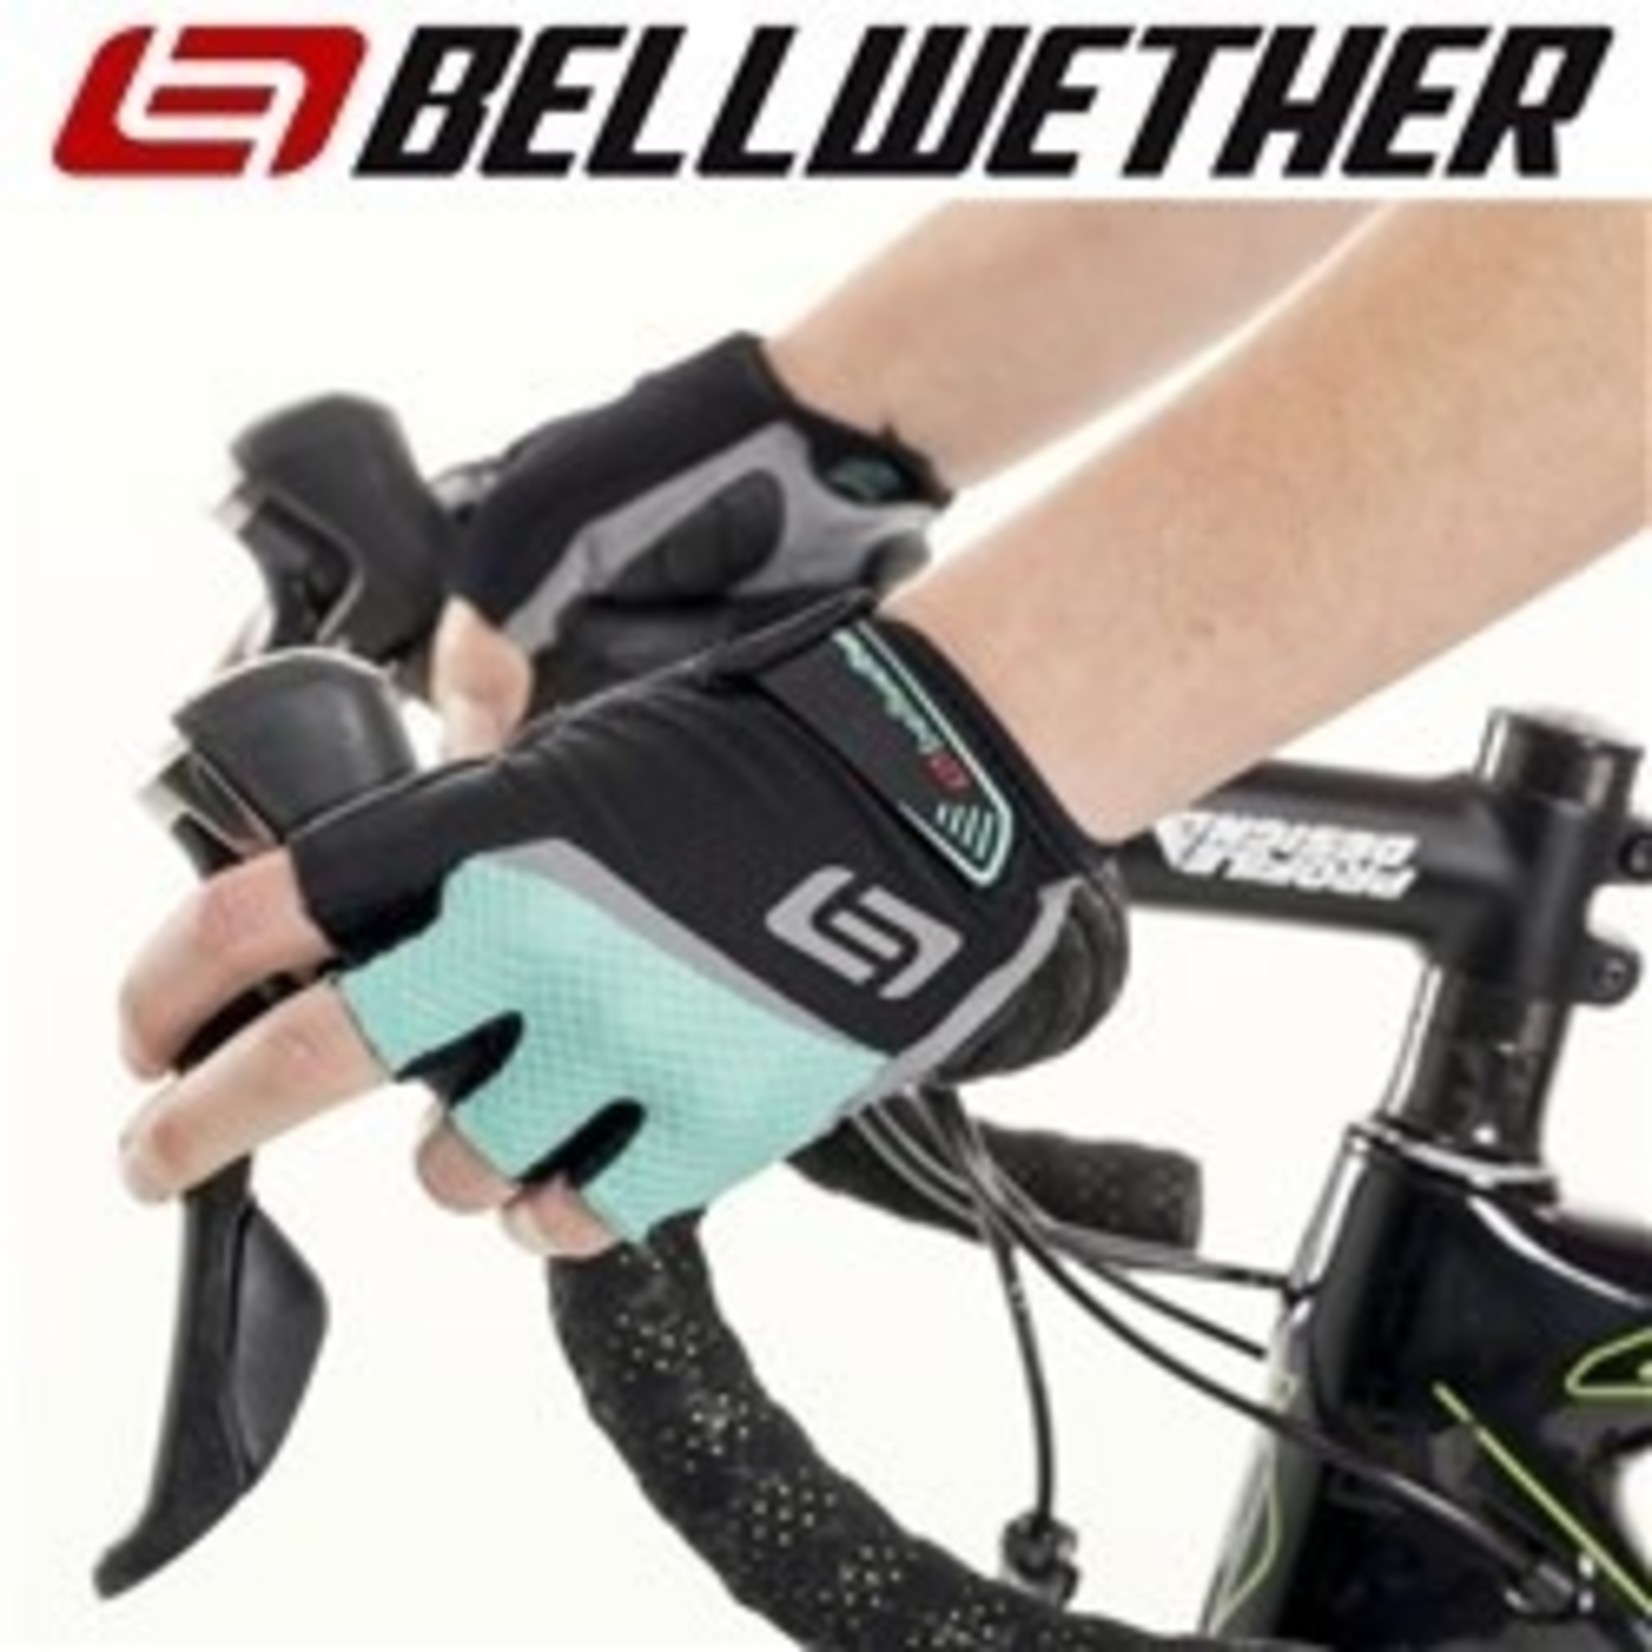 Bellwether Bellwether Cycling Gloves - Amara Palm - Women's Ergo Gel - Aqua